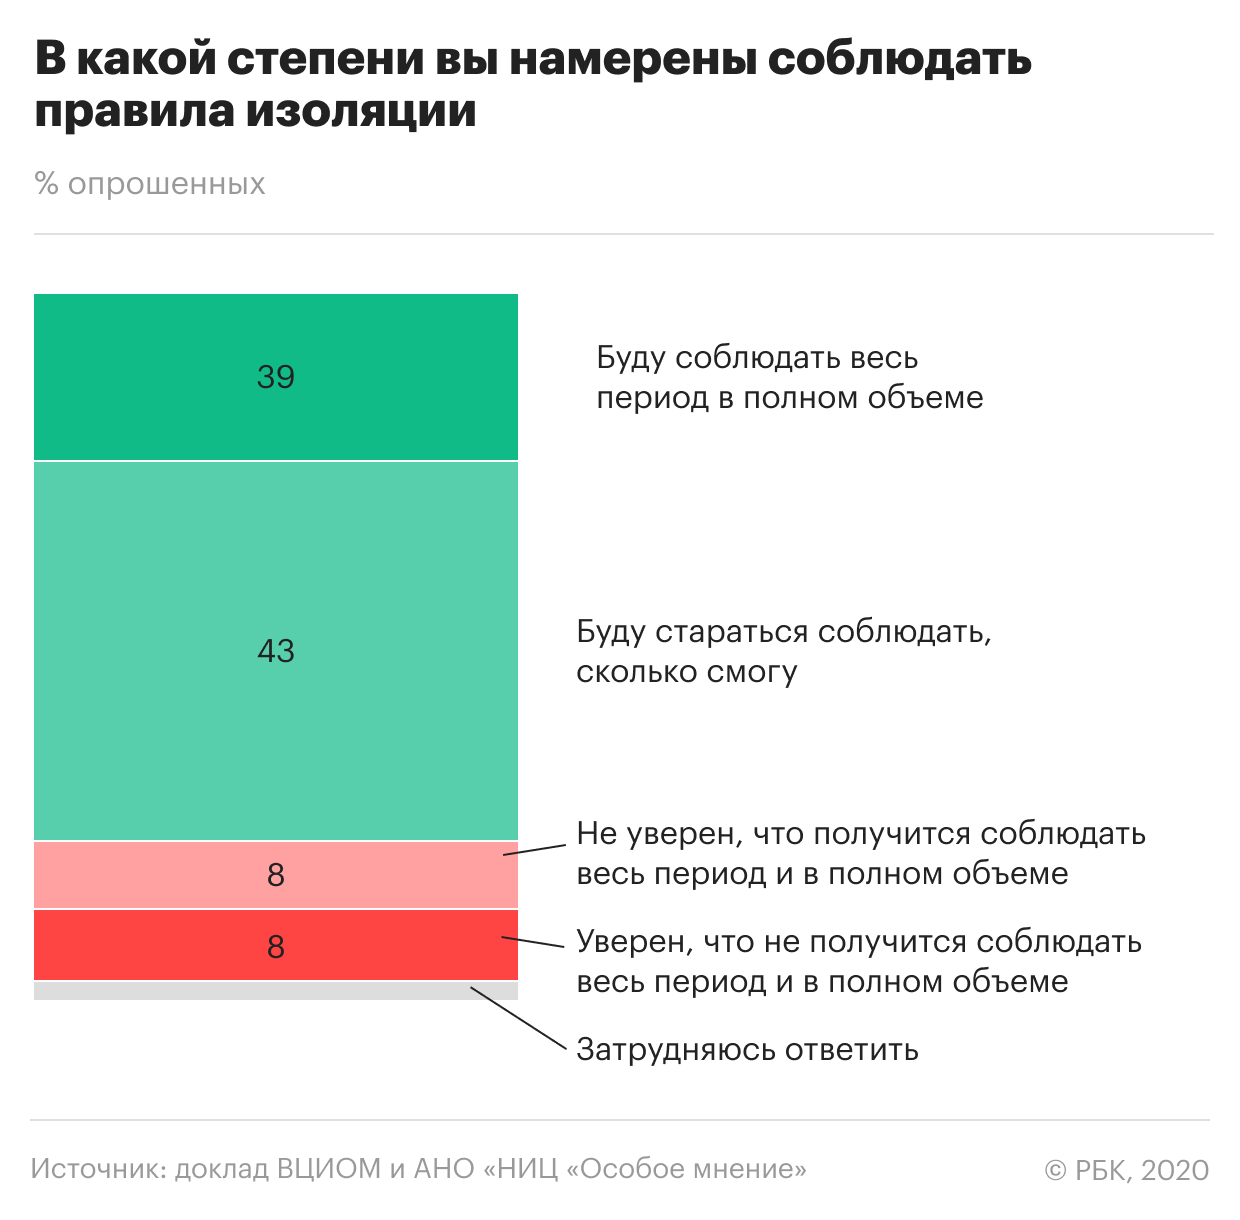 40% россиян сочли низкой опасность заразиться коронавирусом